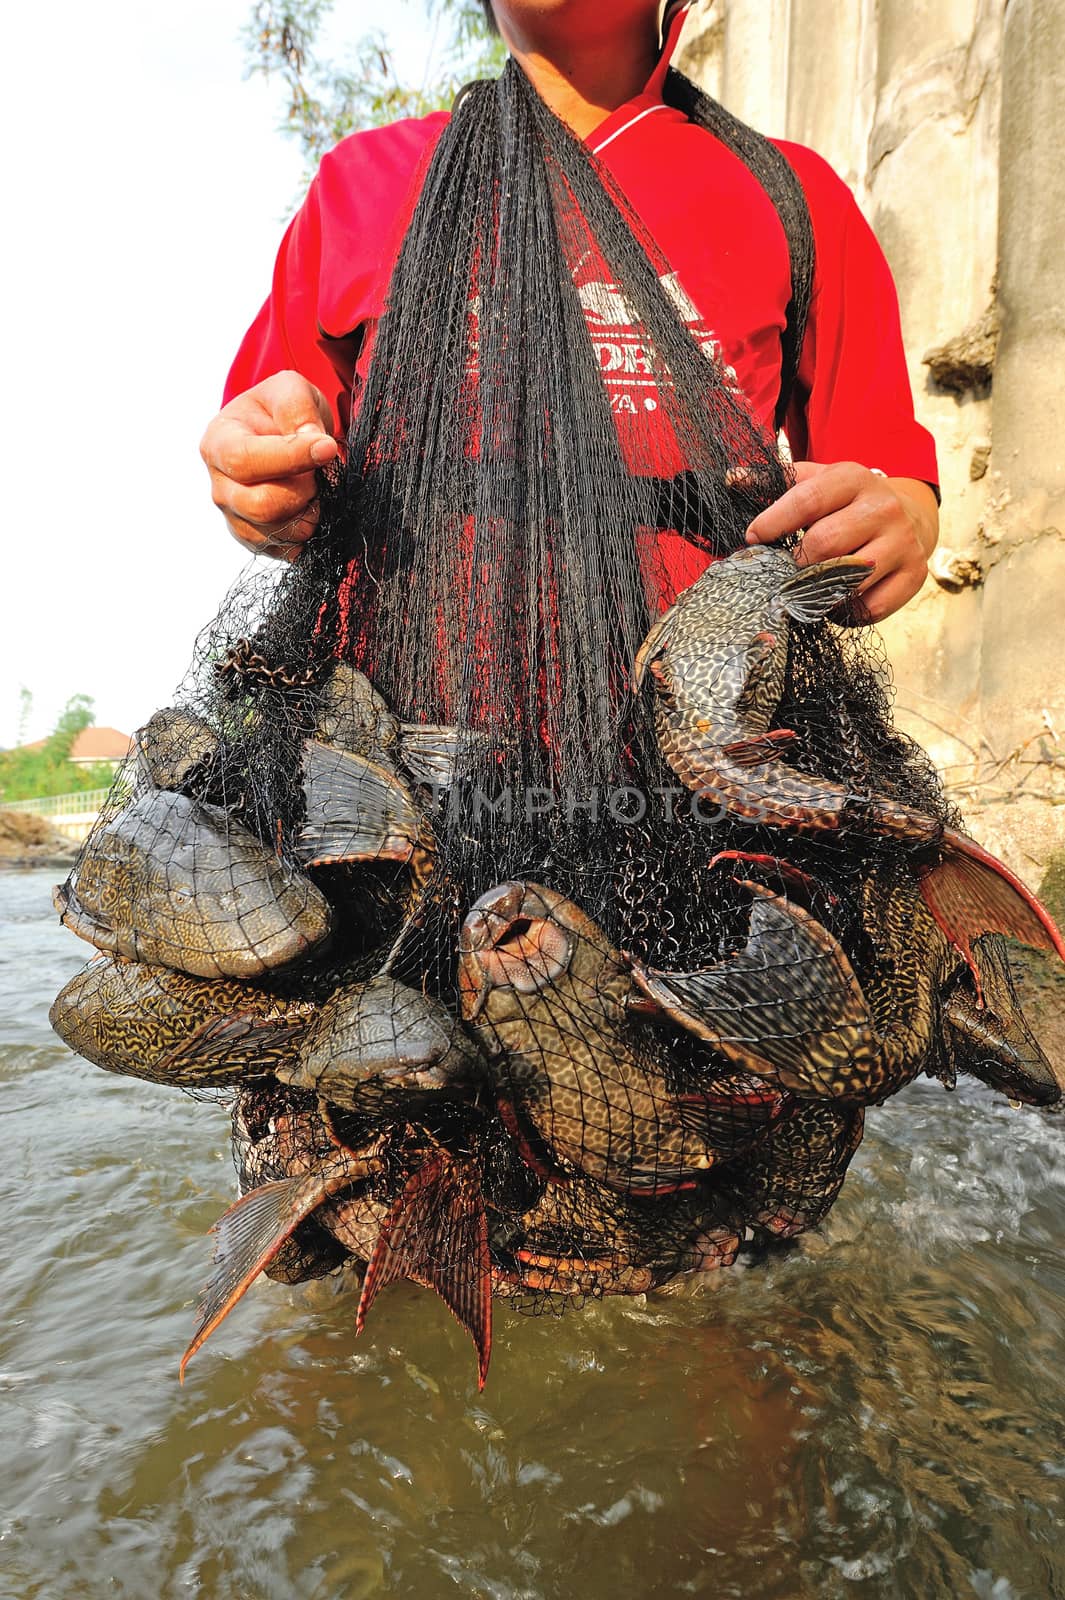 Plecostumus fish (sucker fish) outbreak in river, Thailand.